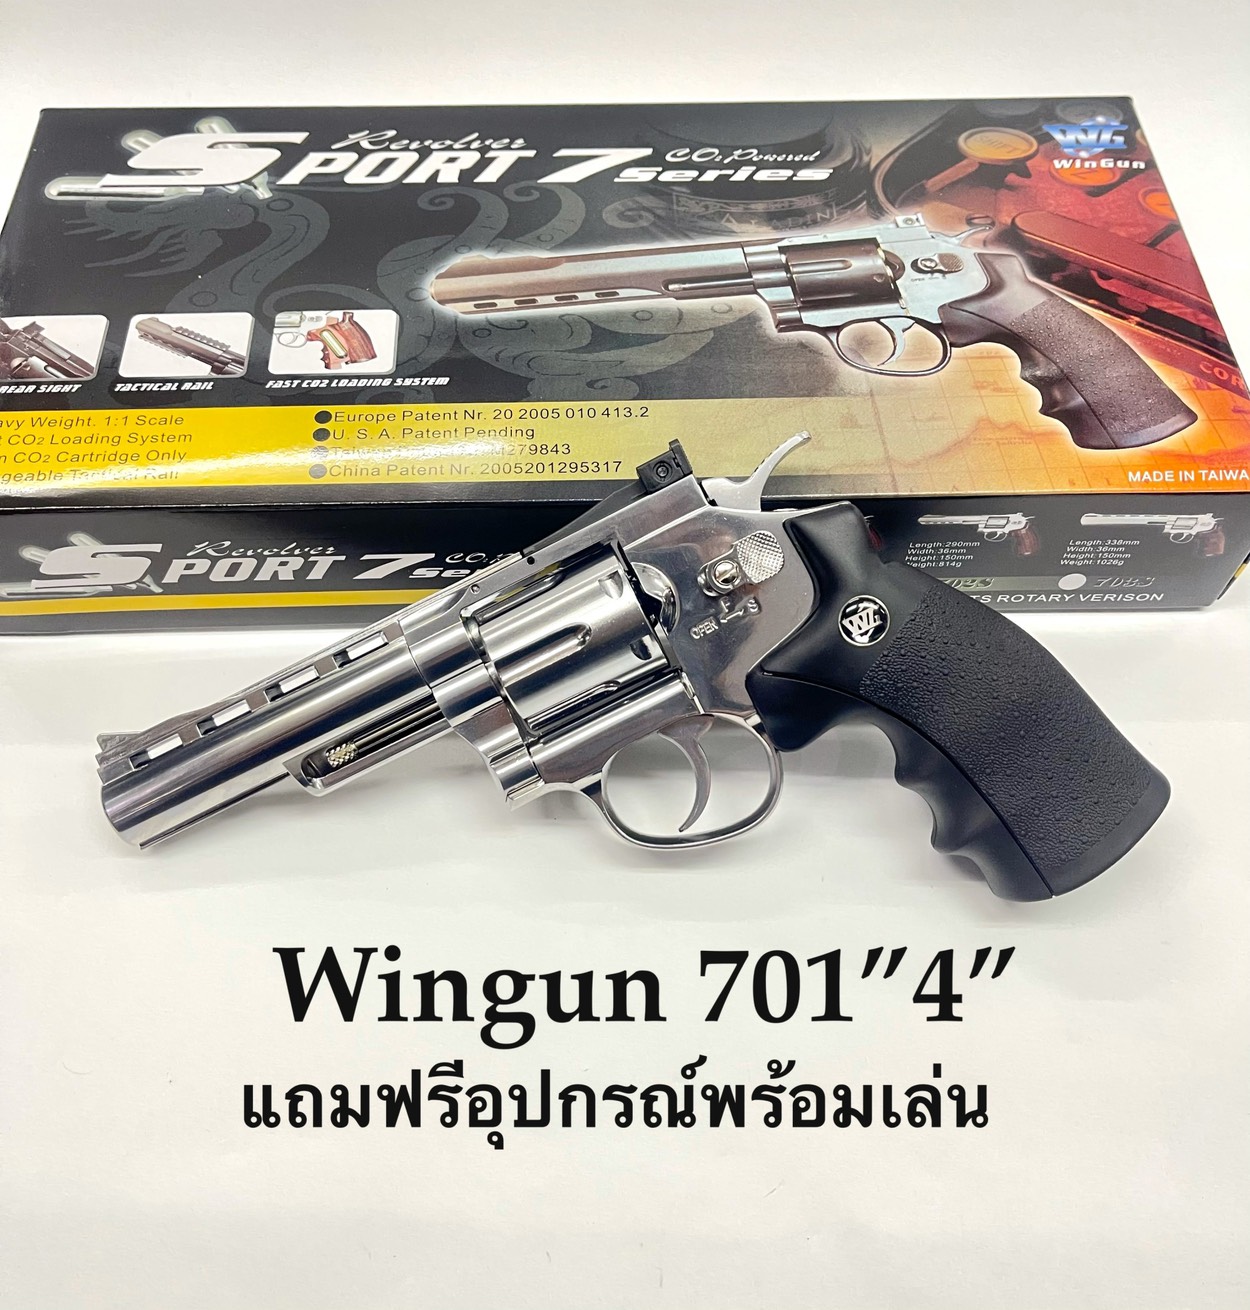 ปืนบีบีกันลูกโม่ Wingun 7014 นิ้ว Co2 สีเงินแถมฟรี อุปกรณ์พร้อมเล่น มือ 1 สินค้ามือ 1 เก็บเงินปลายทางได้. 